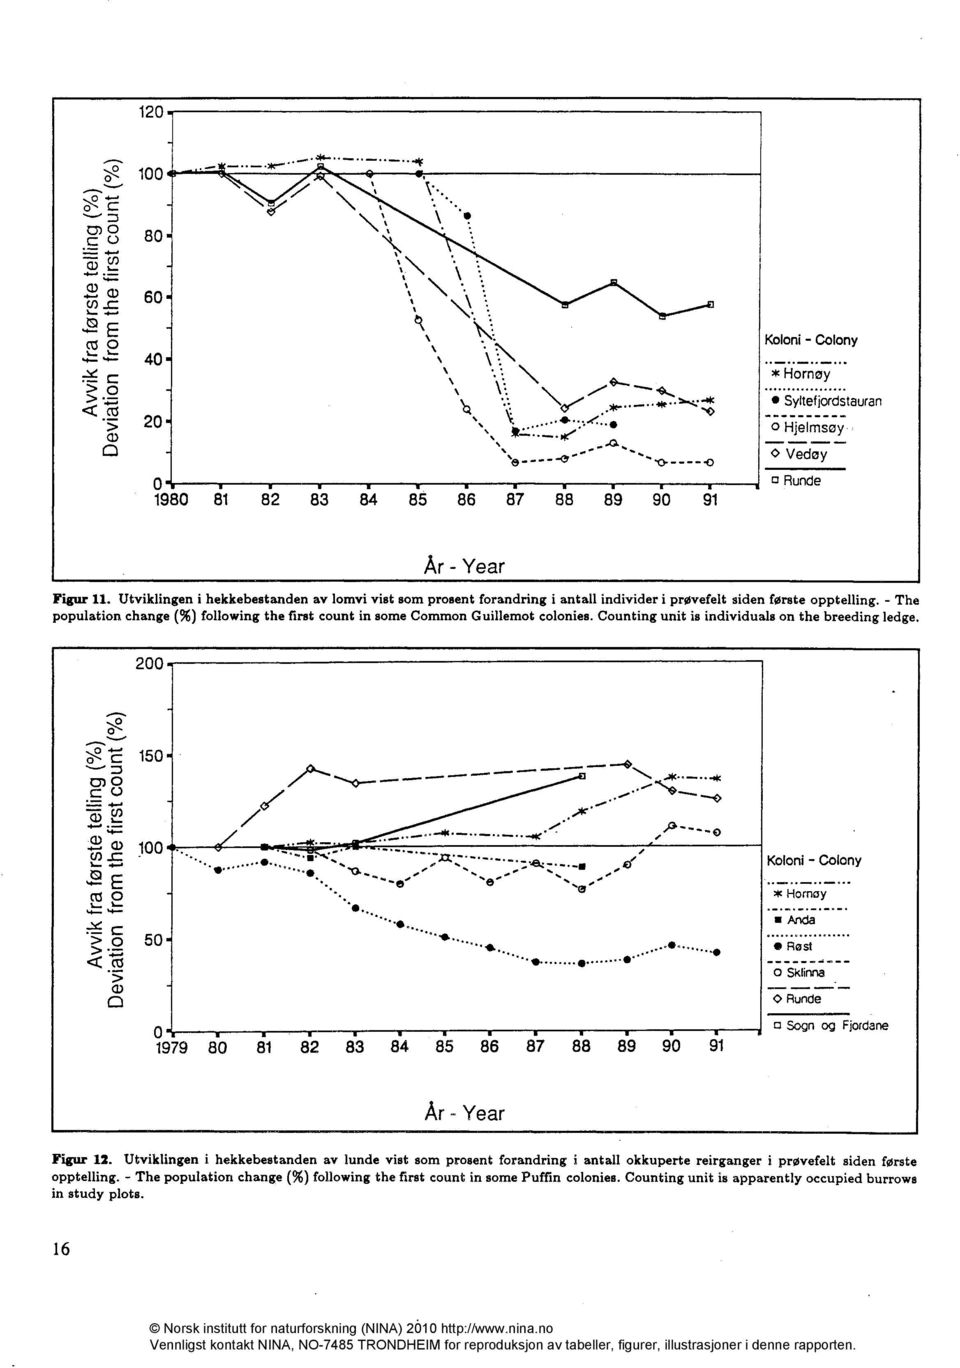 Utviklingen i hekkebestanden av lomvi vist som prosent forandring i antall individer i prøvefelt siden første opptelling.